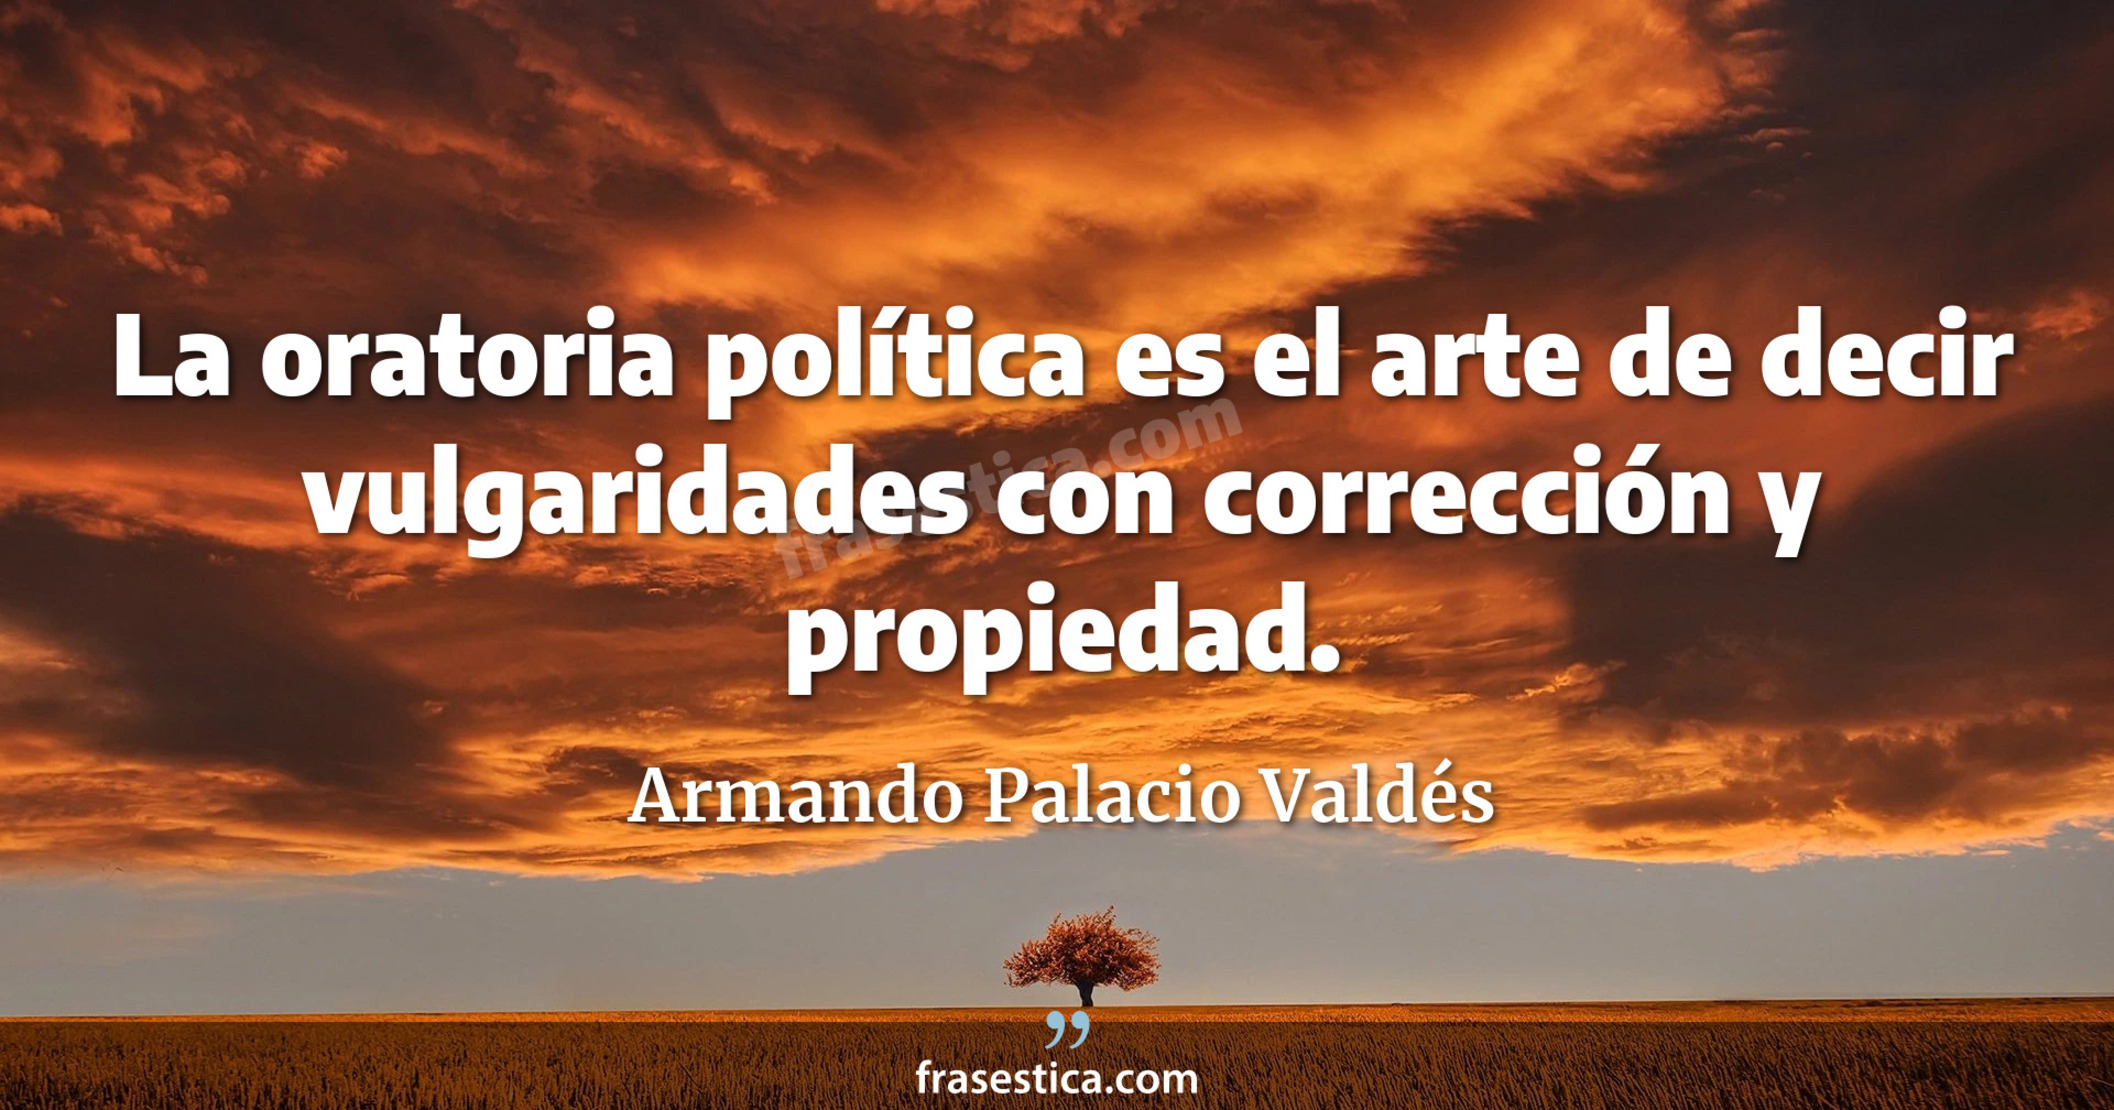 La oratoria política es el arte de decir vulgaridades con corrección y propiedad. - Armando Palacio Valdés